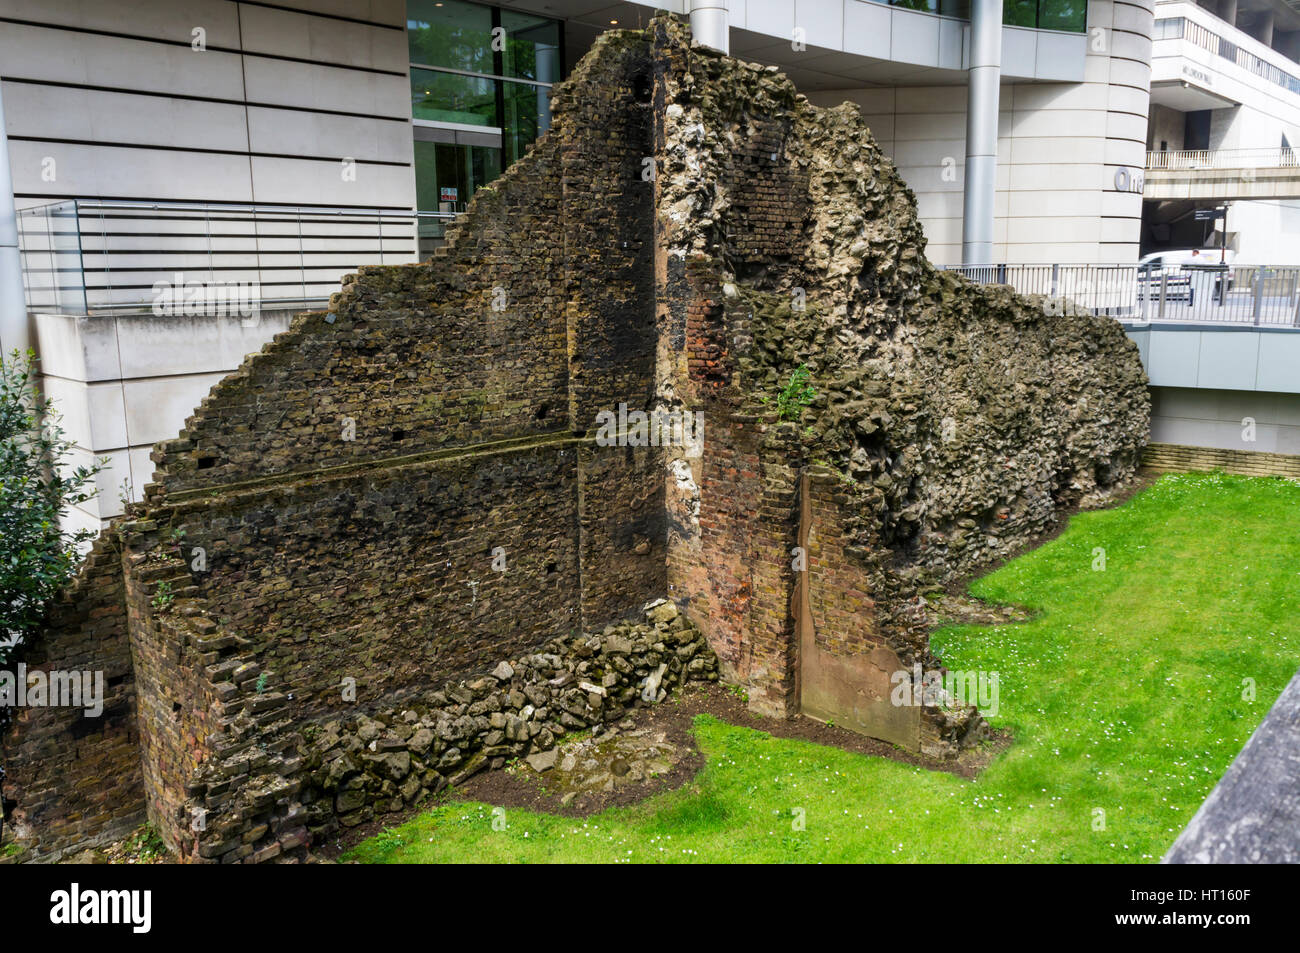 Parte superstite della vecchia Londra parete esposta su uno dei pochi rimasti WWII siti bomba in nobili San mostra muratura in pietra di epoca romana e medievale periodo Medioevale Foto Stock